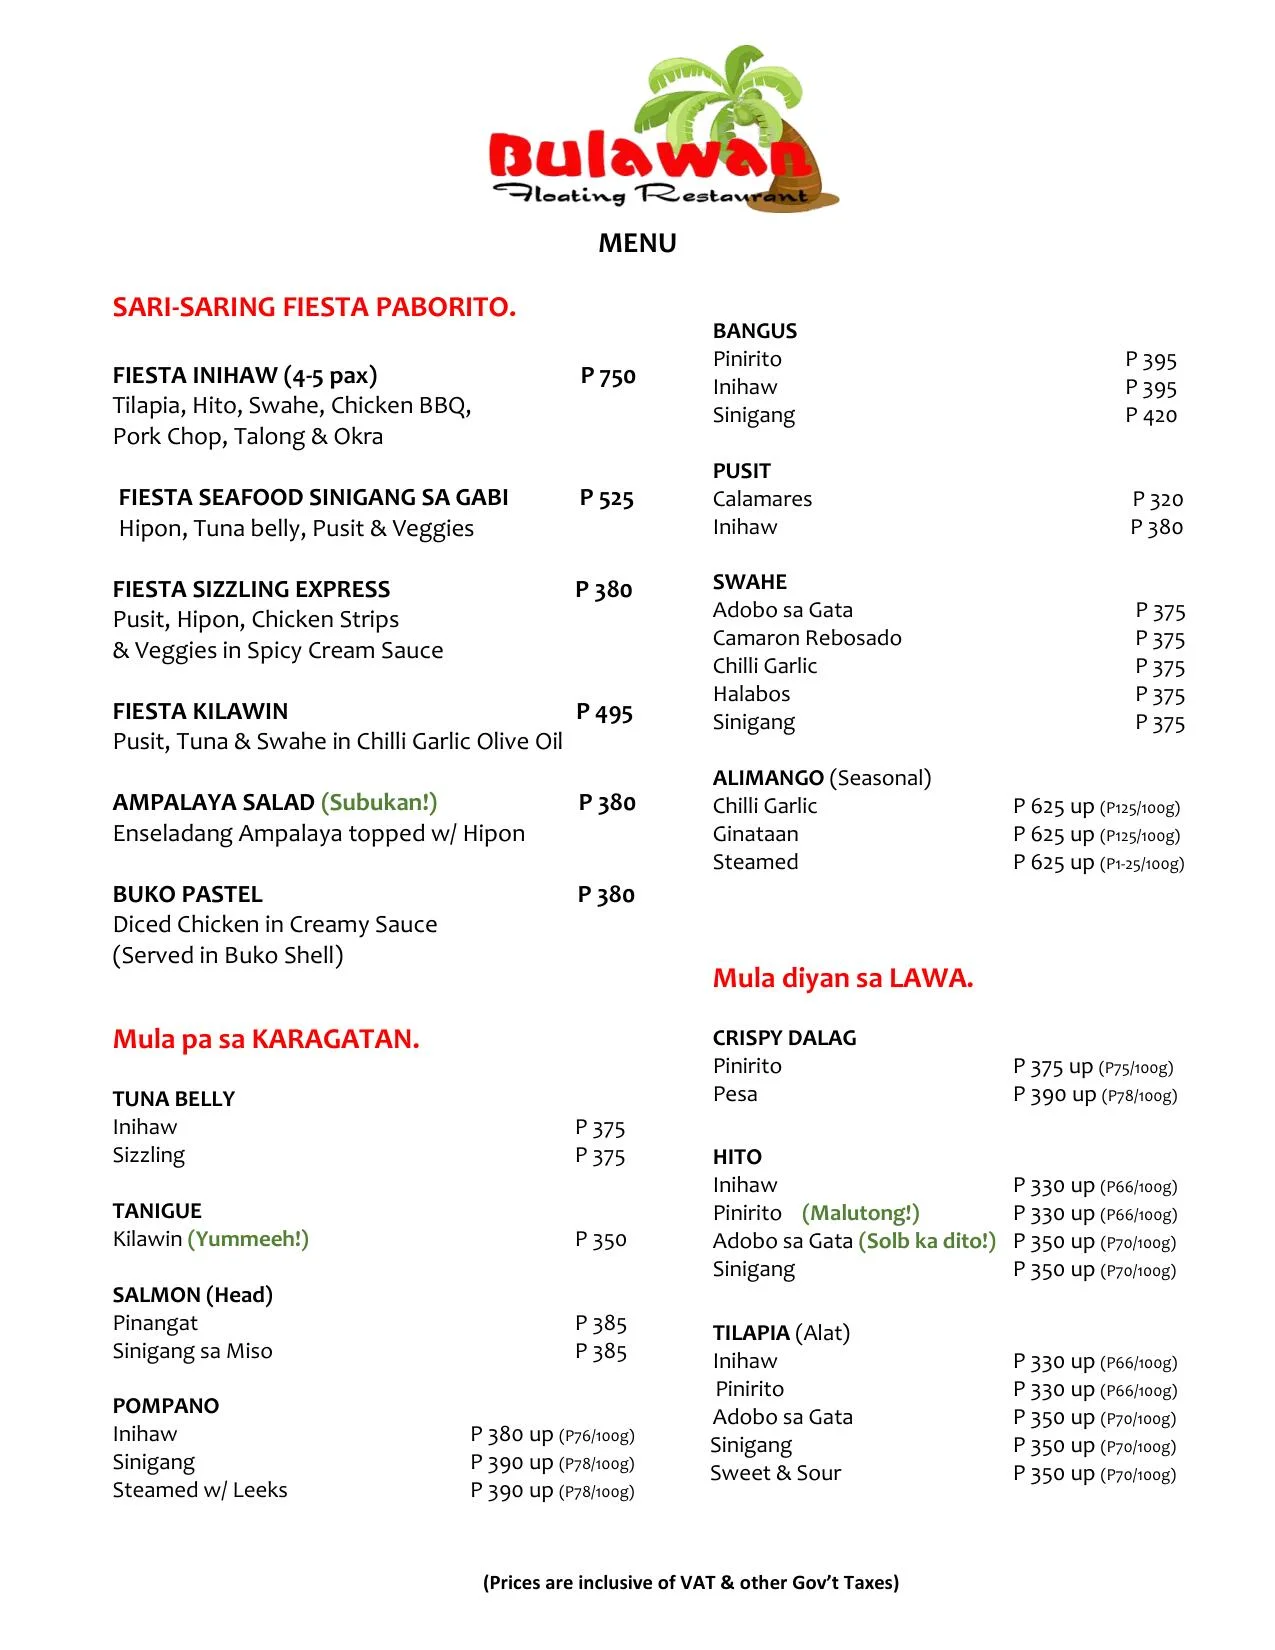 Bulawan Floating Restaurant Menu Prices